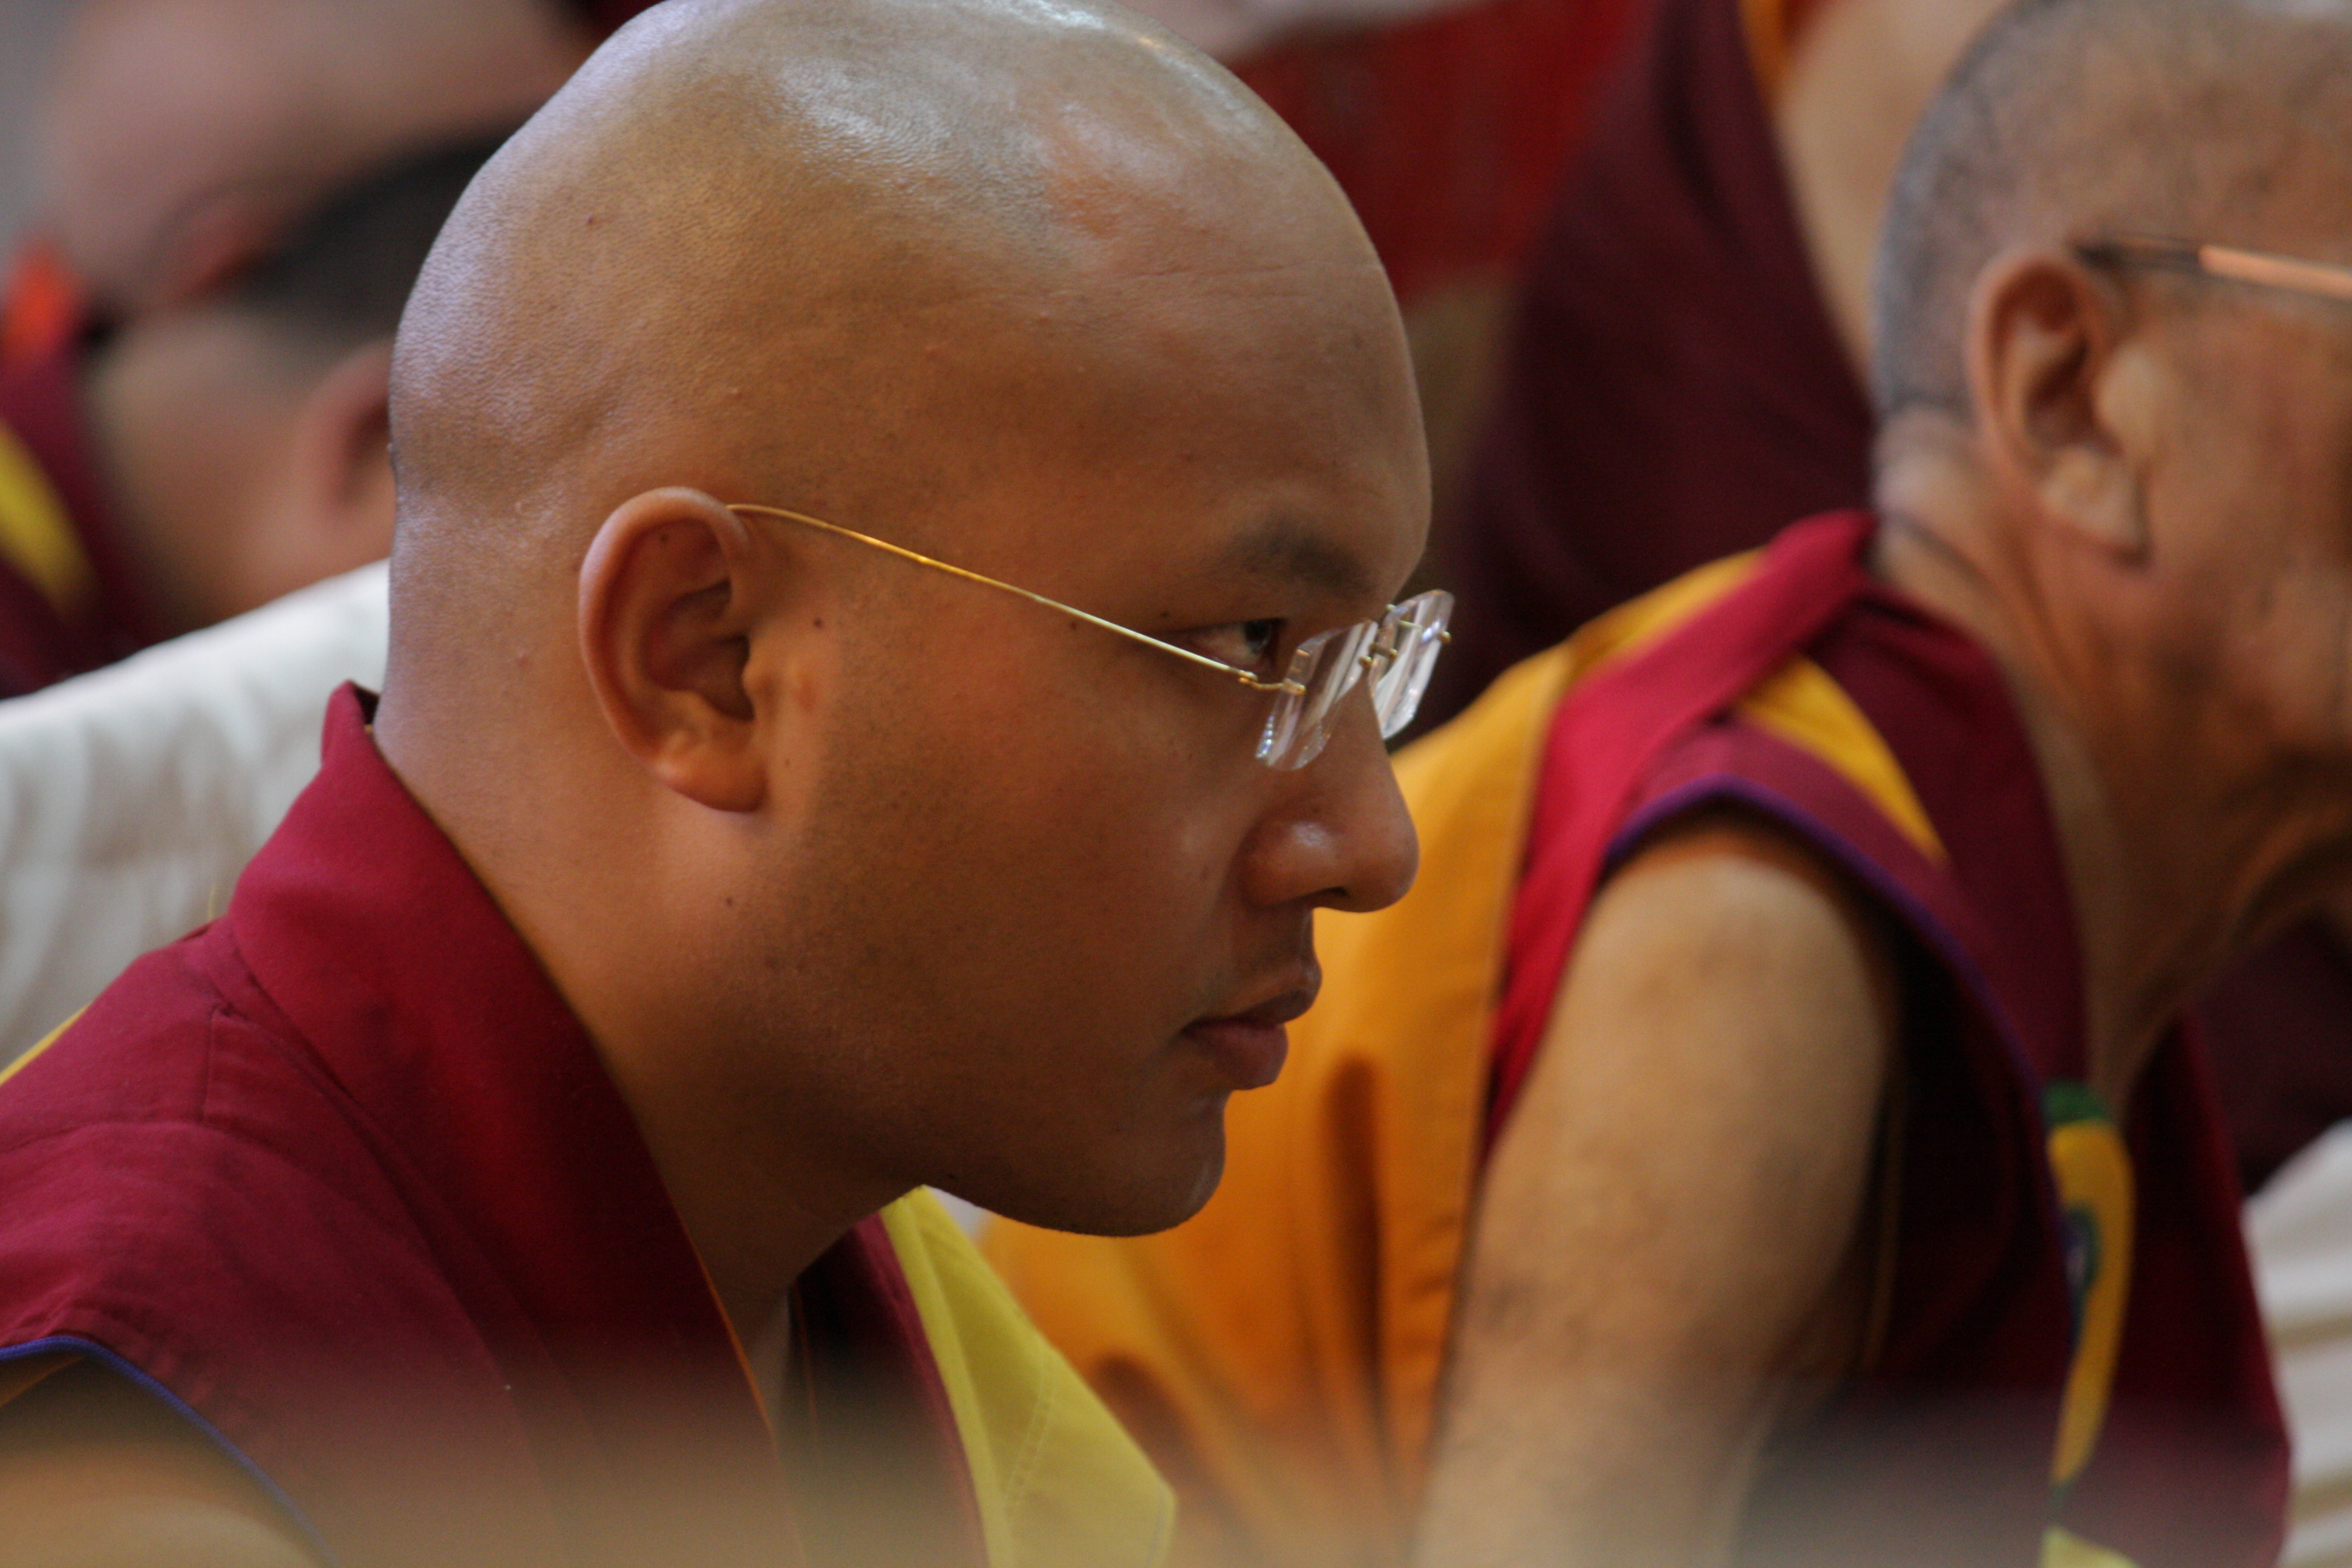 hh_the_17th_gyalwa_karmapa_ogyen_trinley_dorje_in_h_h_dalai_lama_temple_dharamshala_2012_09_28_08_58am.jpg